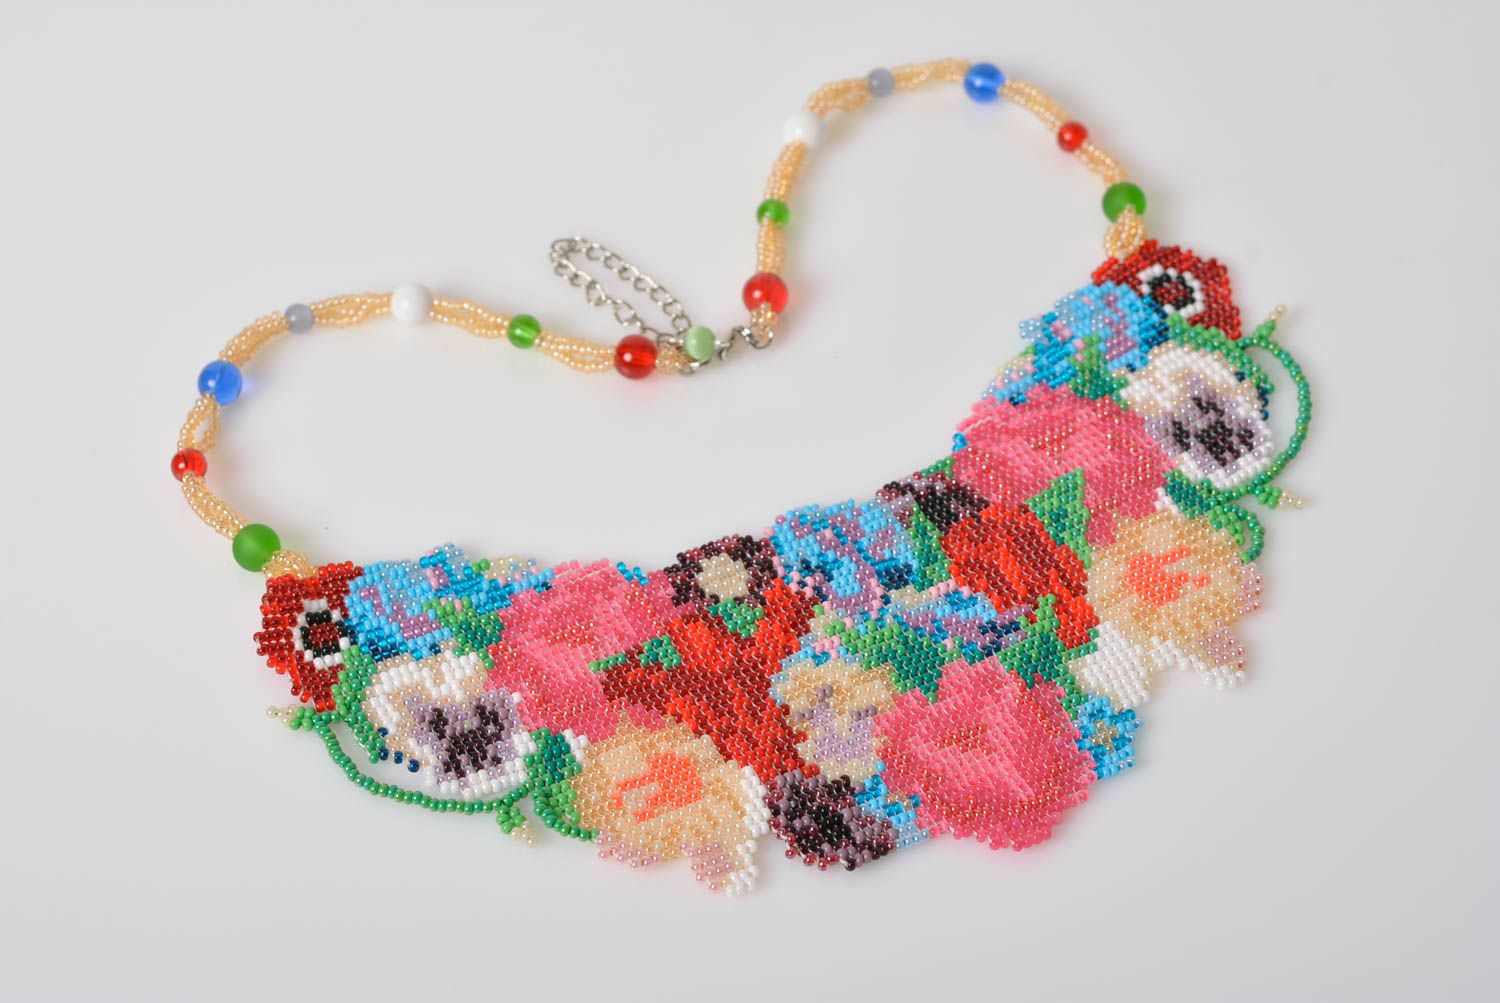 Ожерелье из бисера в технике ткачества разноцветное нежное красивое хэнд мейд фото 1